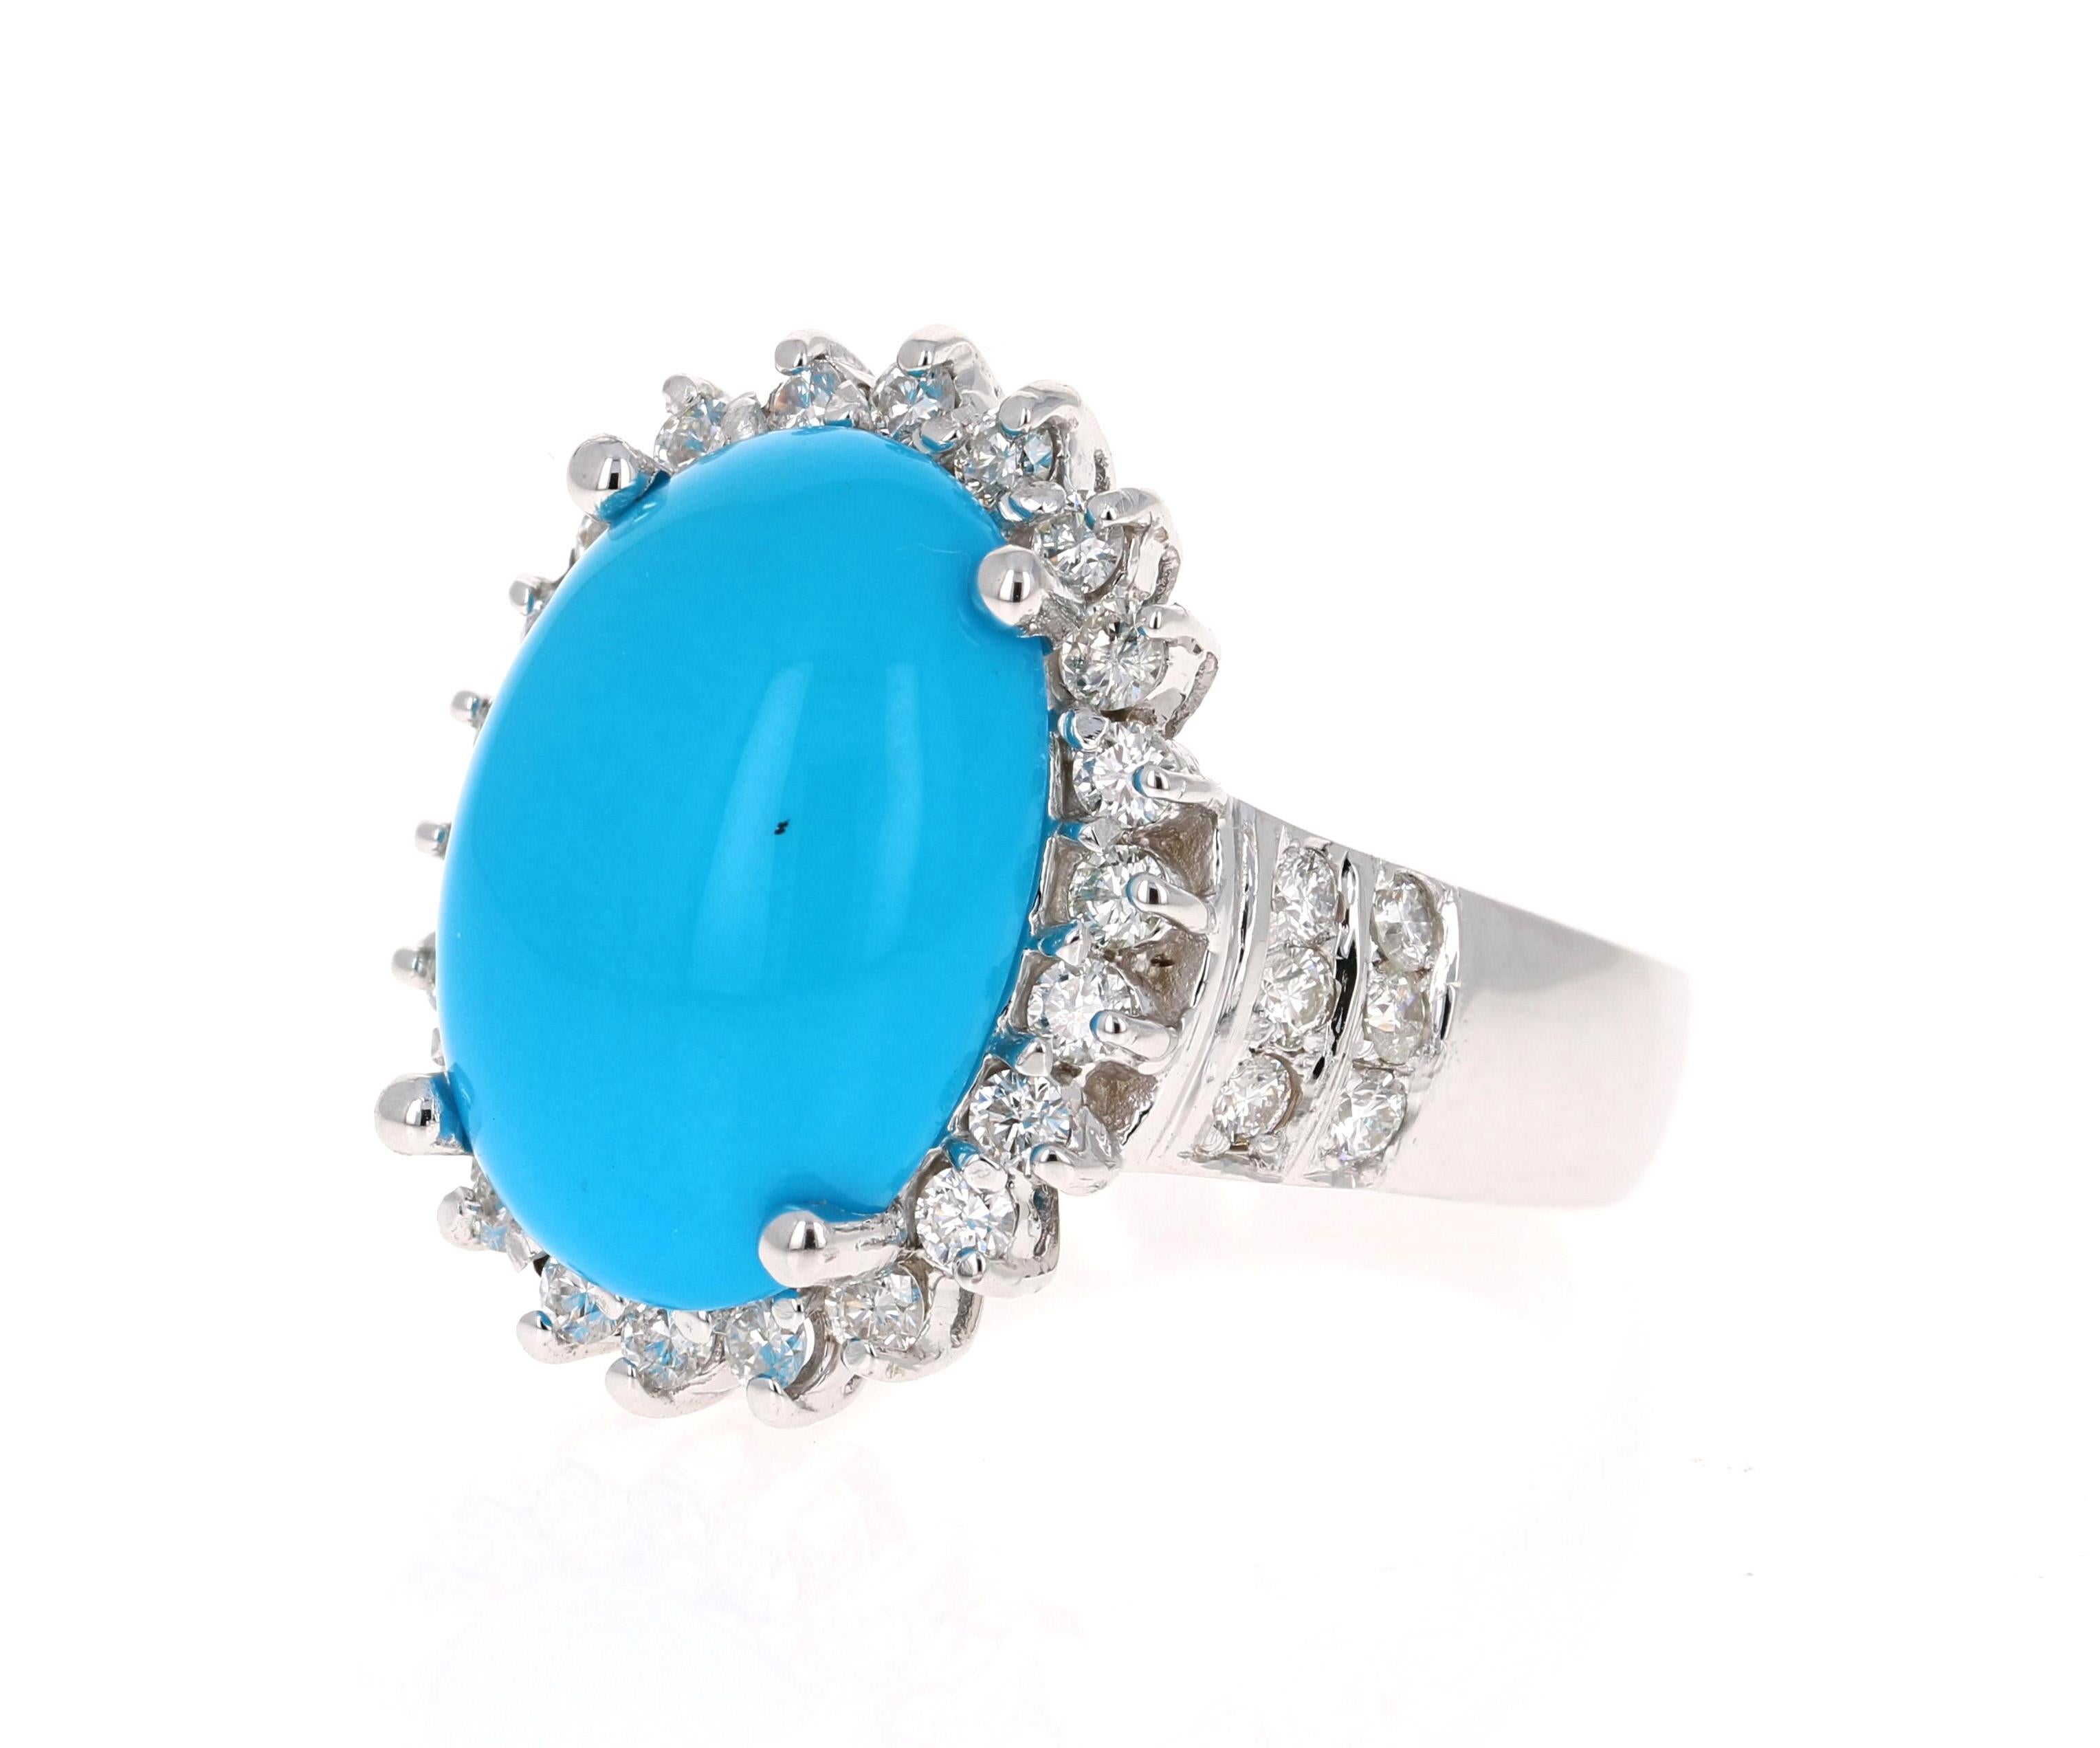 La turquoise de taille ovale pèse 8,55 carats et est entourée d'un halo de diamants magnifiquement sertis. 
Il y a 36 diamants de taille ronde qui pèsent 1,15 carats (Clarté : SI2, Couleur : F).
Le poids total en carats de la bague est de 9.70